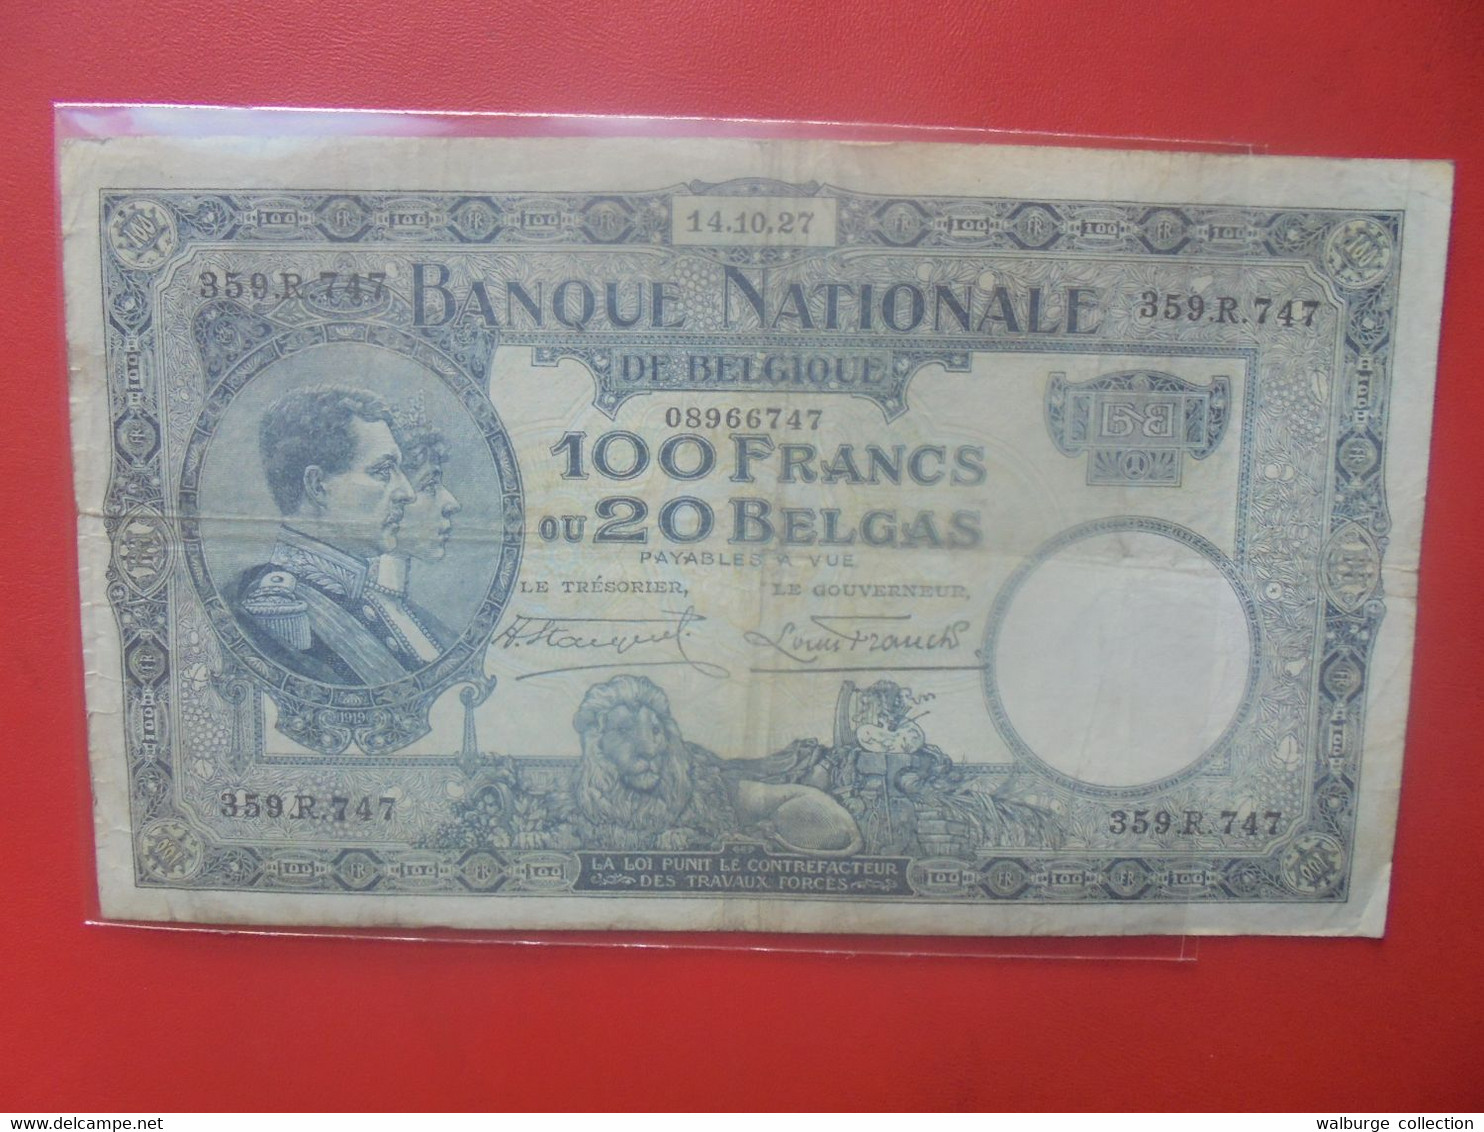 BELGIQUE 100 FRANCS 14-10-27 Circuler (B.26) - 100 Francs & 100 Francs-20 Belgas